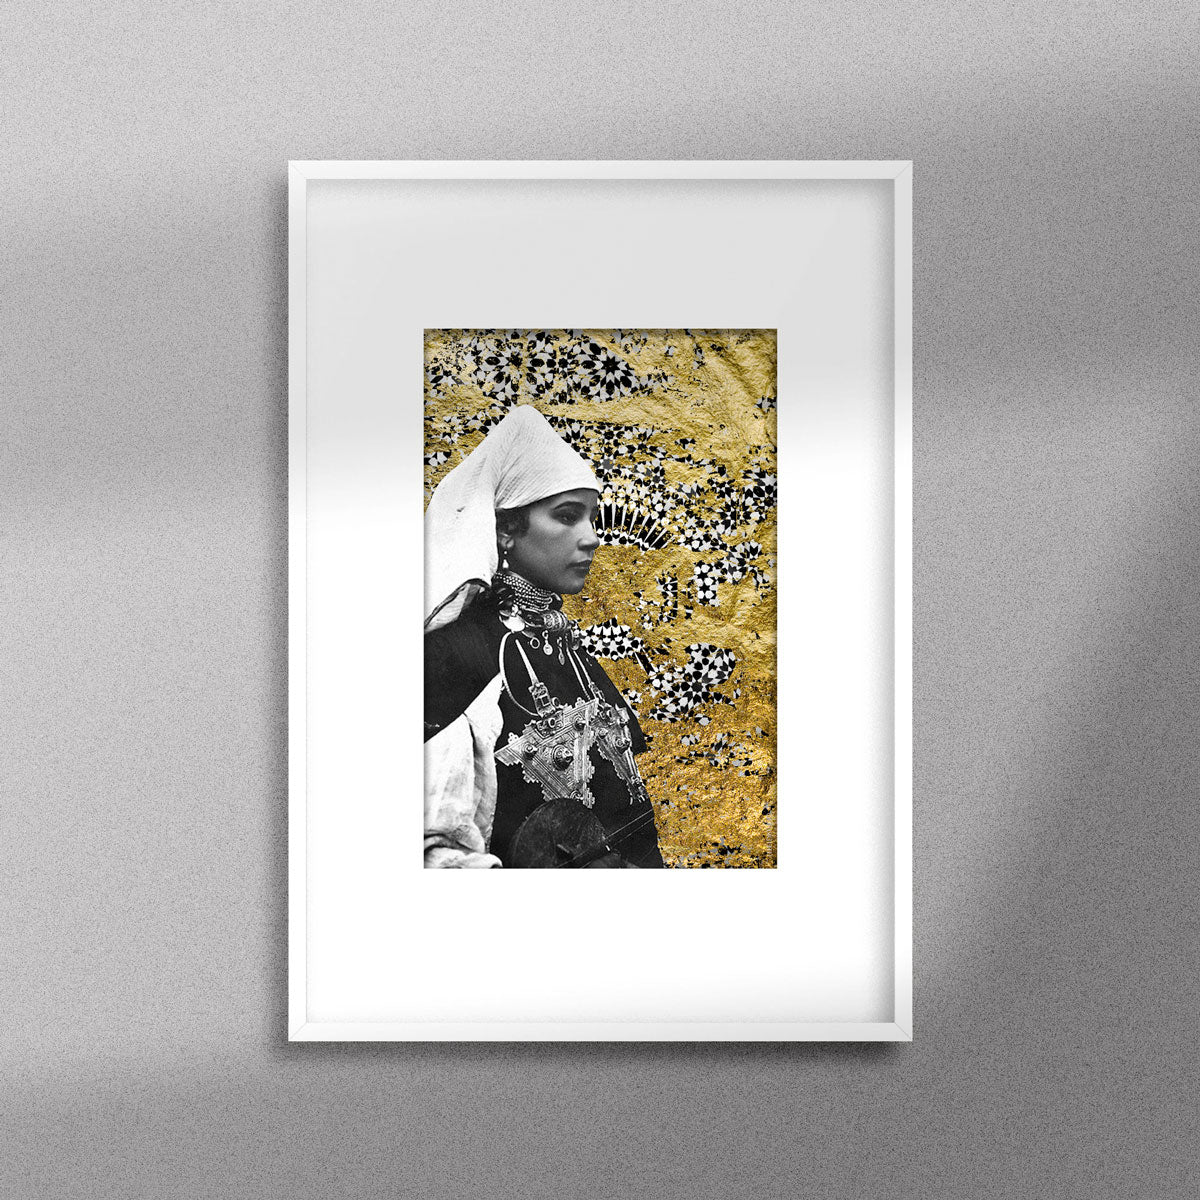 Tableau décoratif représentant un portrait d'une femme amazighe portant la fibule sur un fond de zellige marocain avec des feuilles d'or, encadré dans un cadre blanc - Format A4.